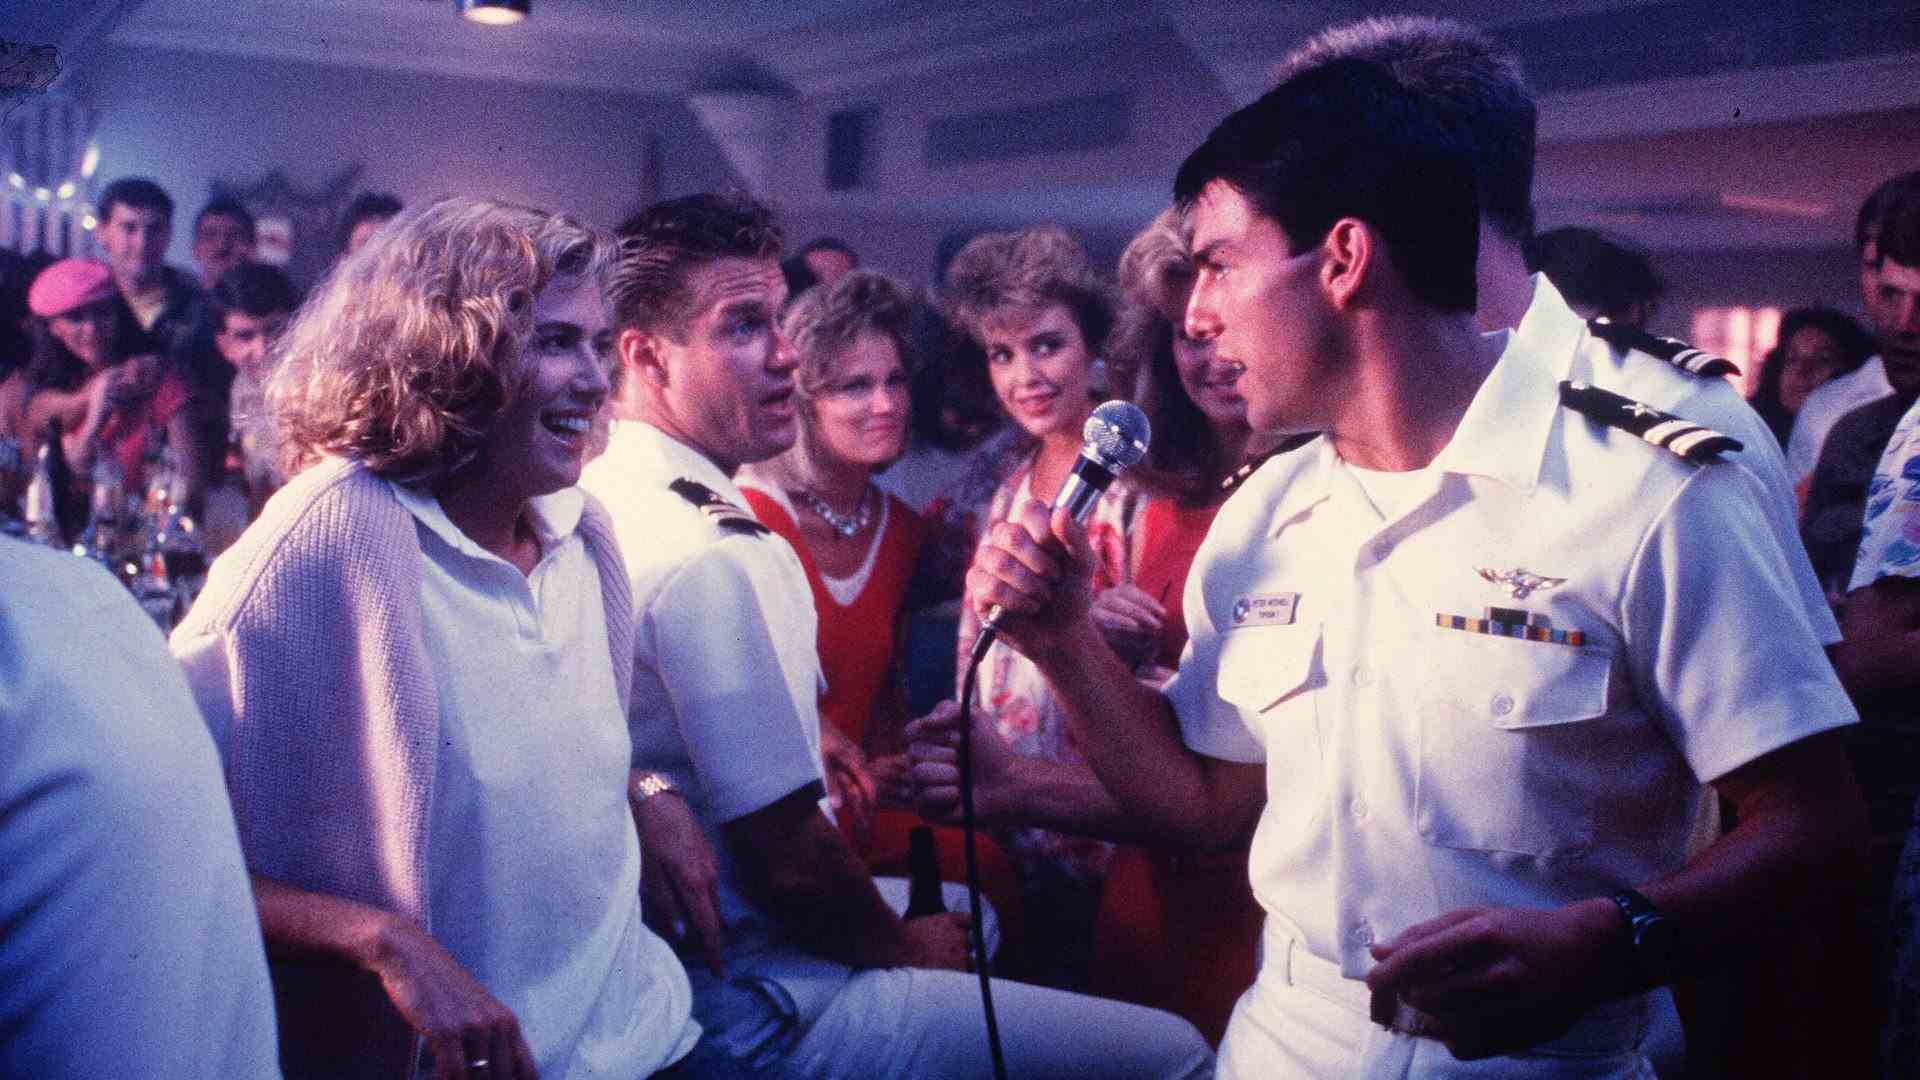 Un homme en uniforme de la marine chante pour une femme dans un bar entouré de monde.